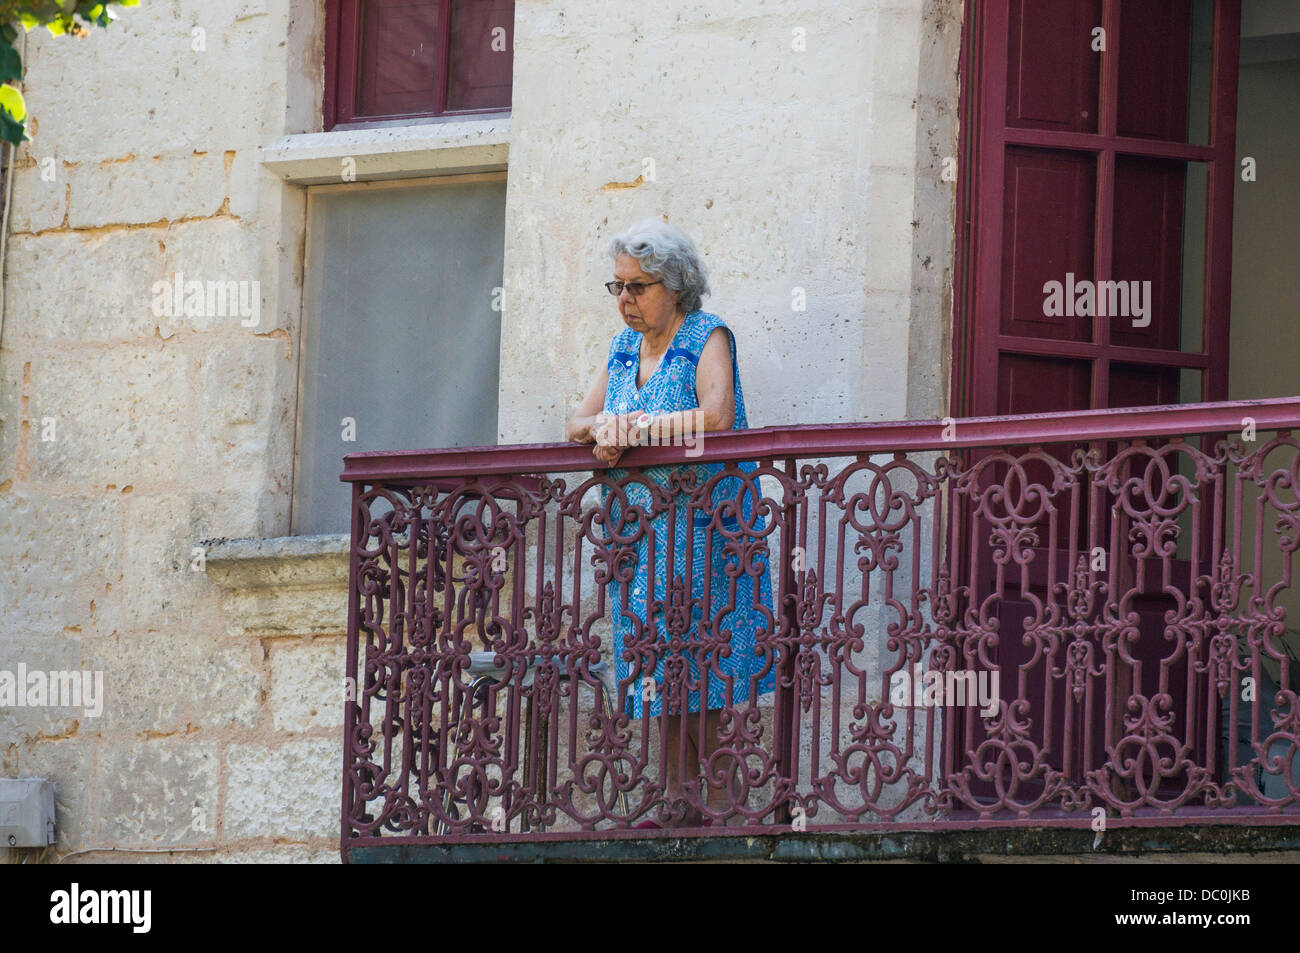 Une vieille dame à lunettes français debout, regardant de son balcon, sur la commune de Brantôme, en Dordogne dans le sud-ouest de la France, l'Europe. Banque D'Images